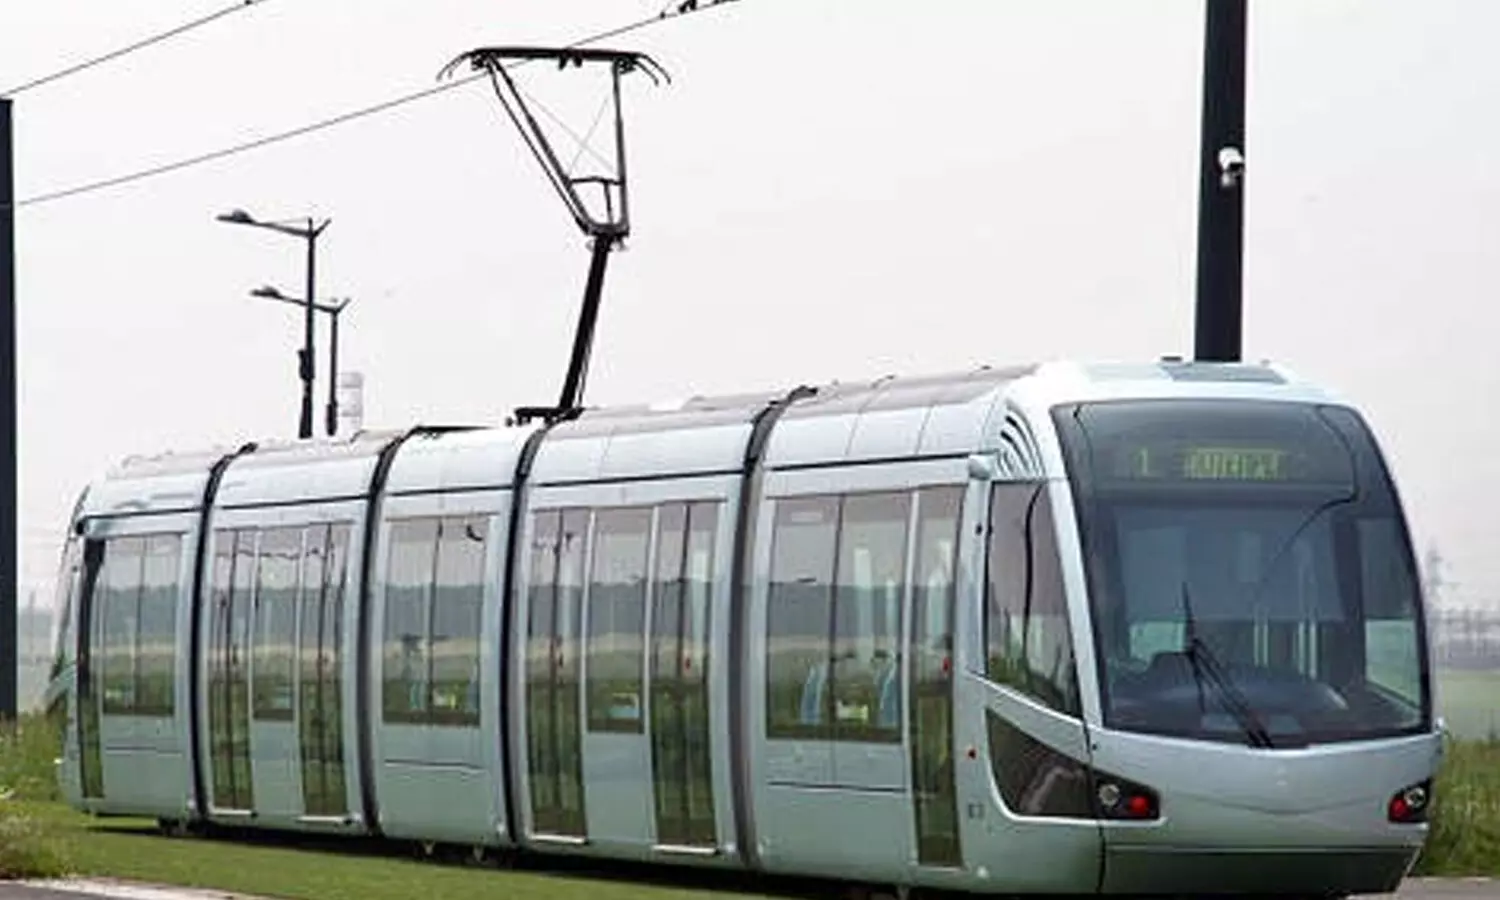 60-km light metro modern tram in Visakhapatnam; minister seeks DPR